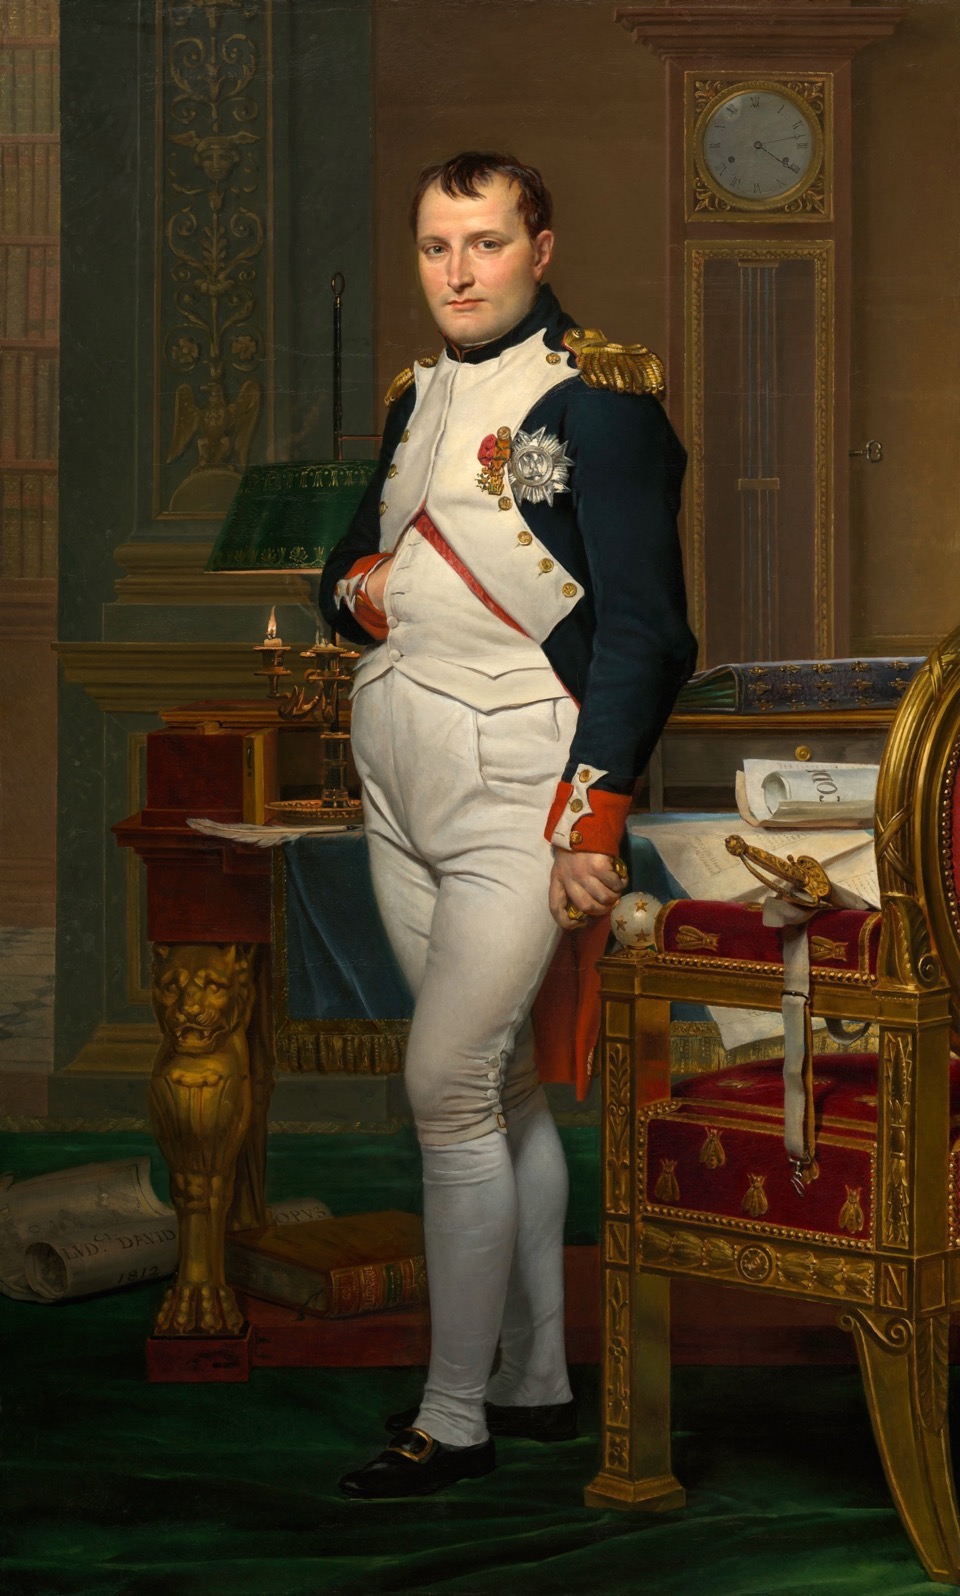 Gemälde von Jacques Louis David, das Napoleon im Arbeitszimmer zeigt, Google Art Project 2